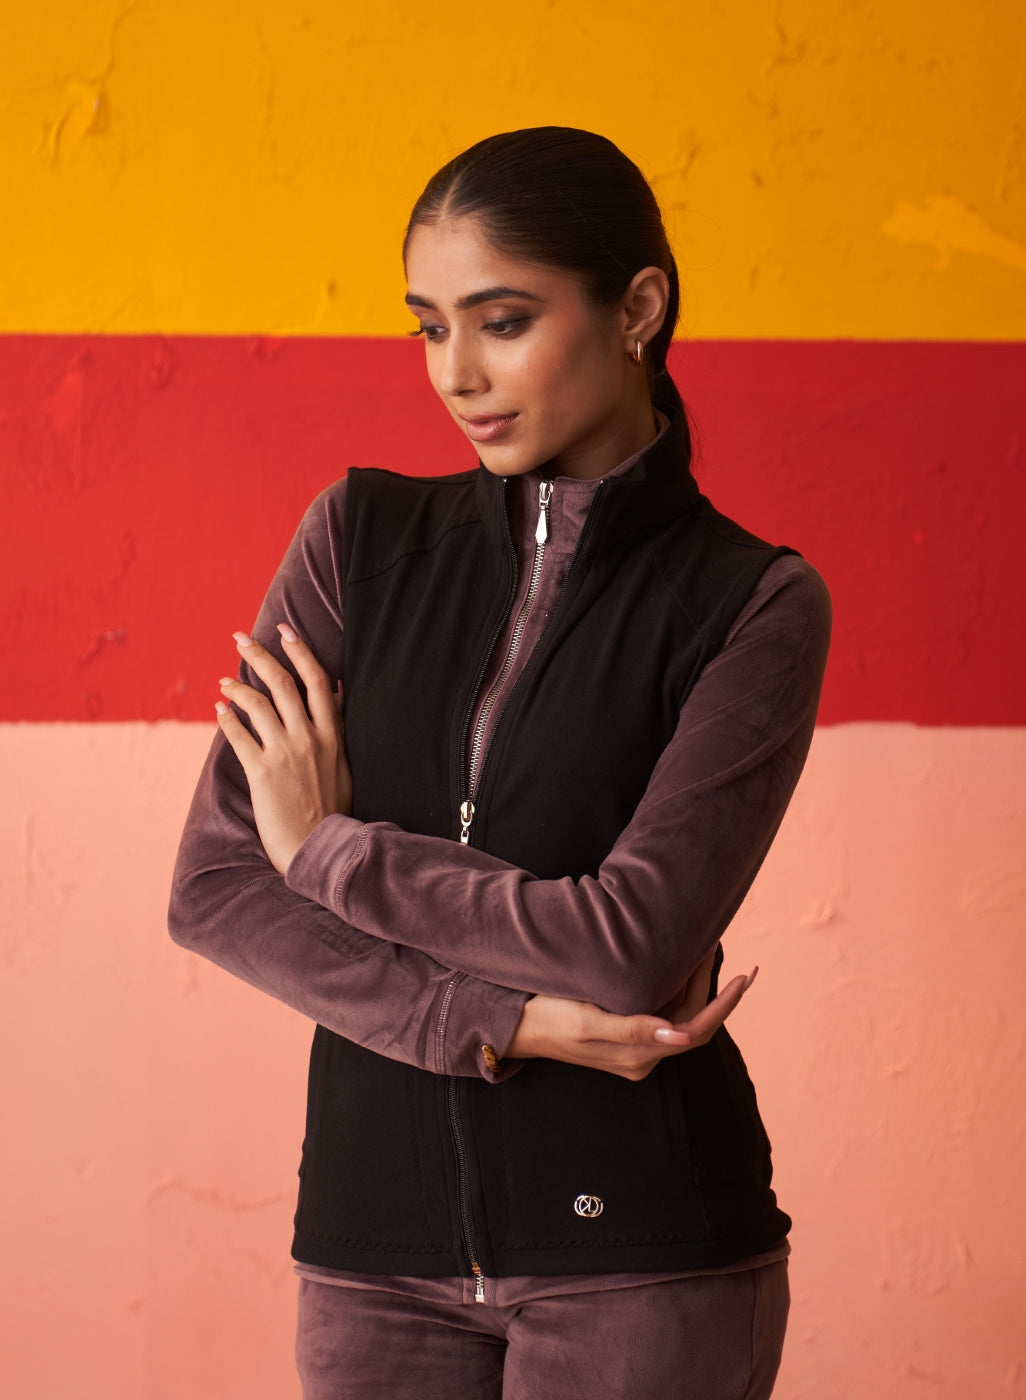 Black High-neck Sleeveless Jacket for Women